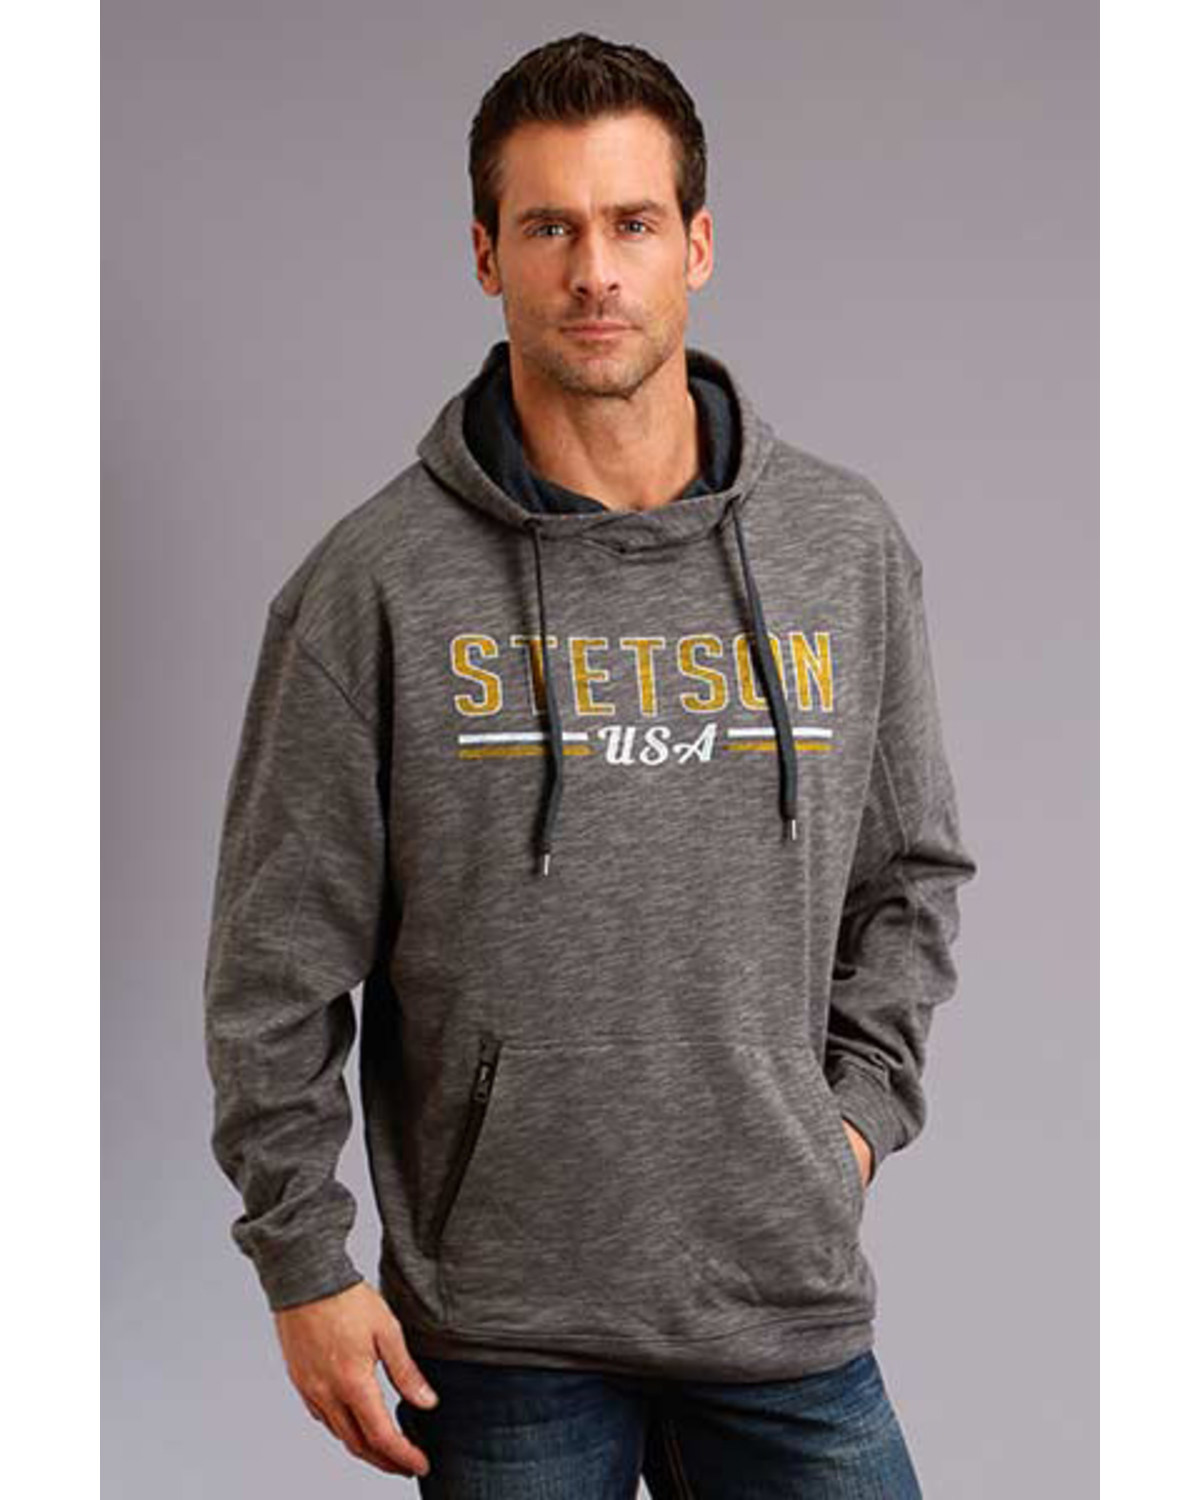 Stetson Men's USA Slub French Terry Hooded Sweatshirt